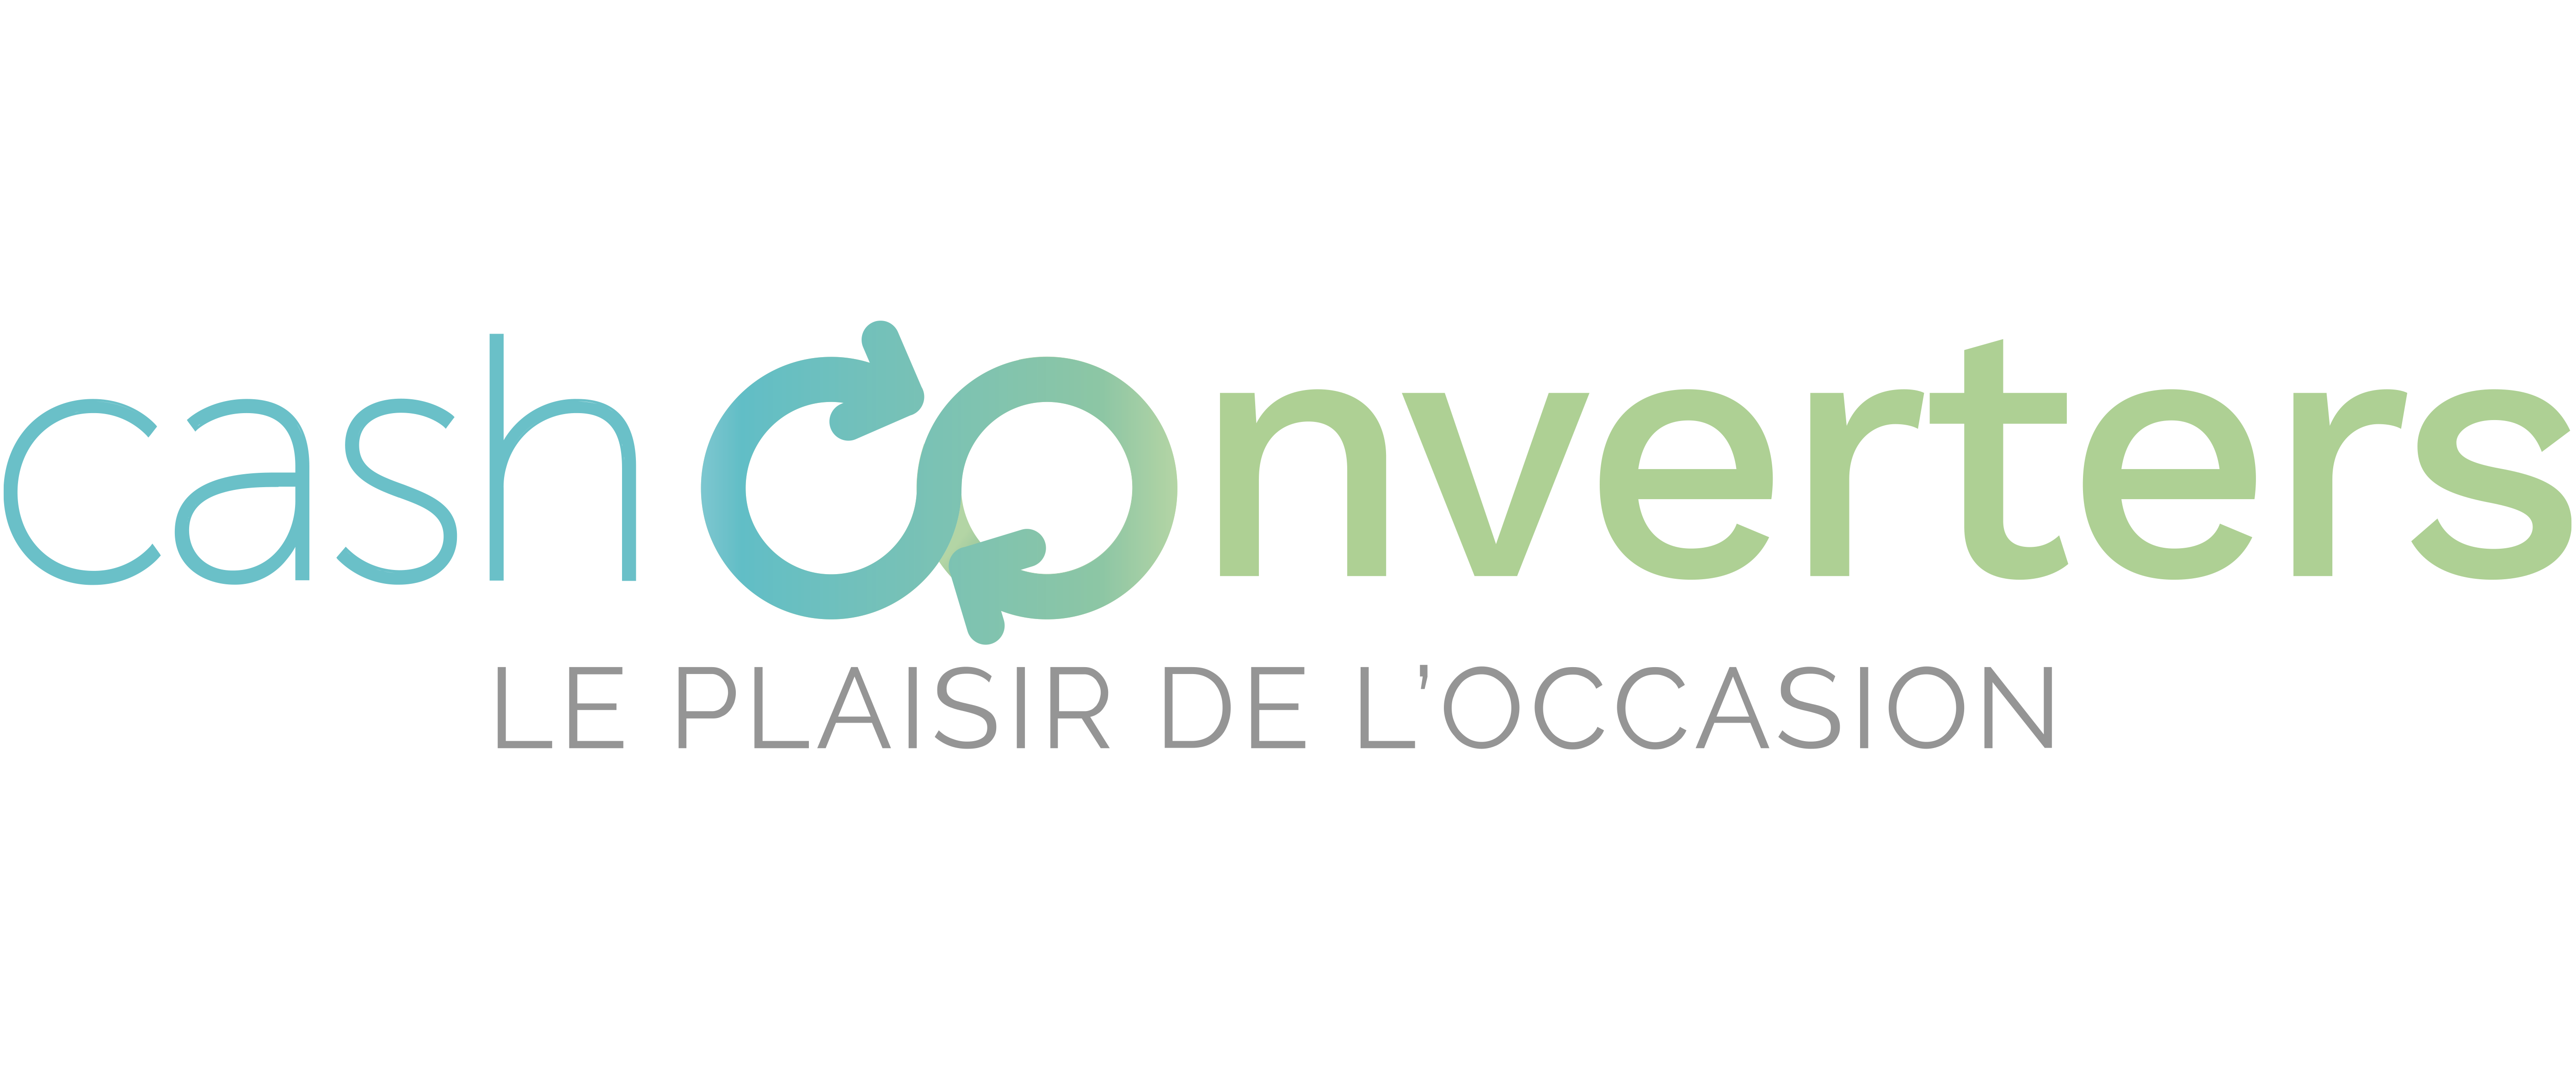 Franchise Cash converters Réunion